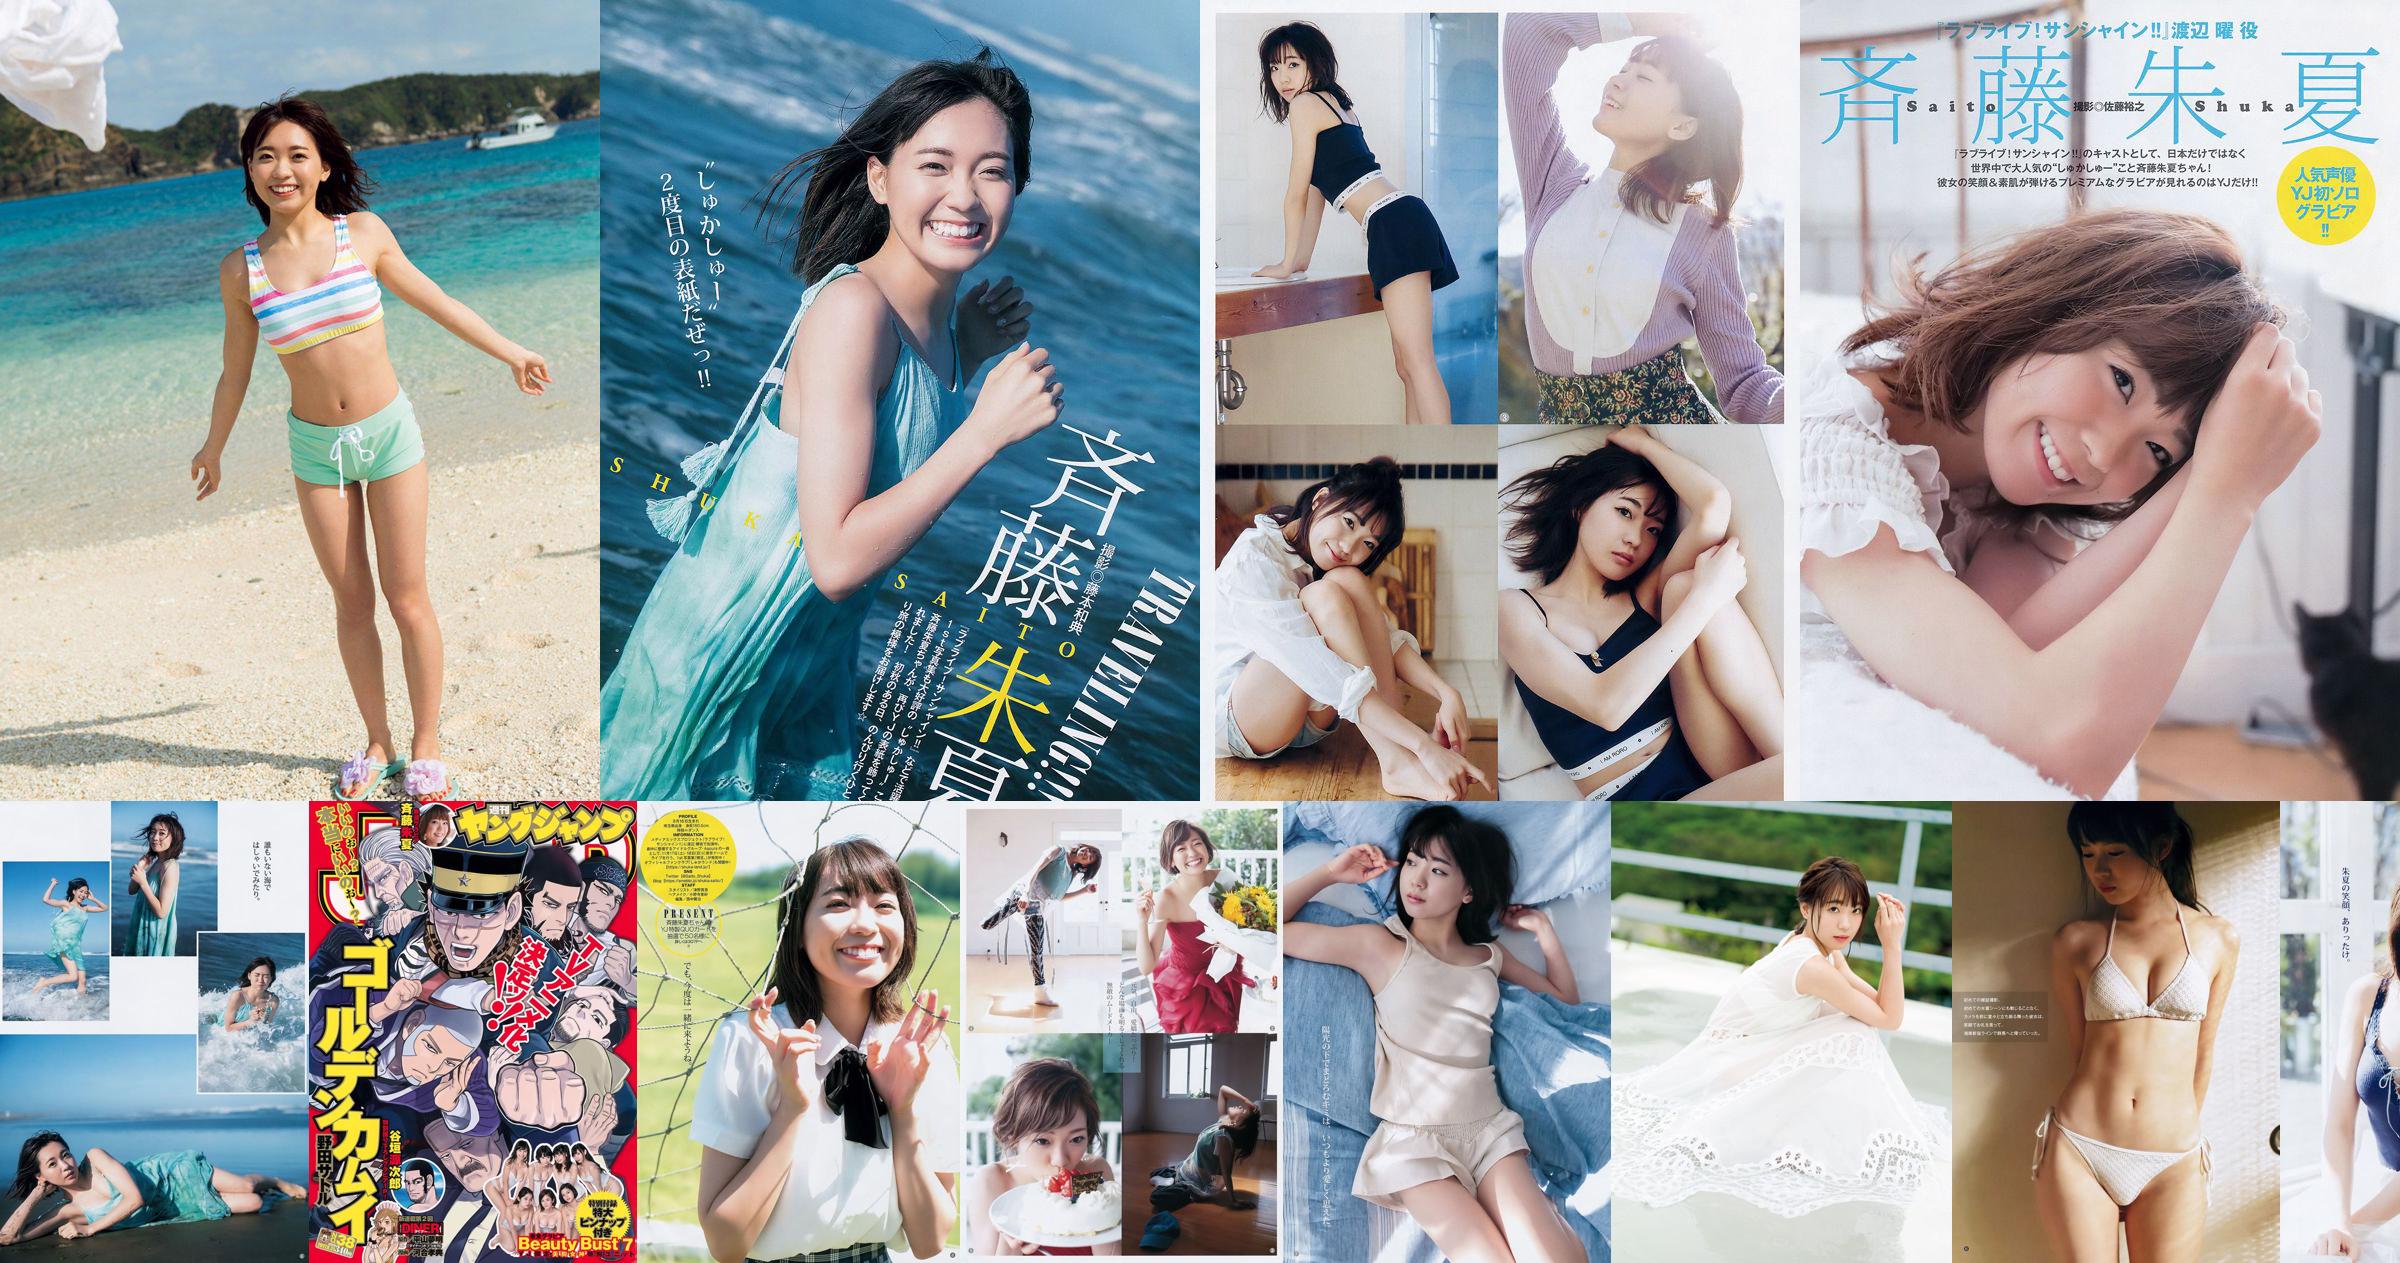 Shuka Saito Beauty Bust 7 [Weekly Young Jump] 2017 No.38 Foto No.4ea4d9 Pagina 4